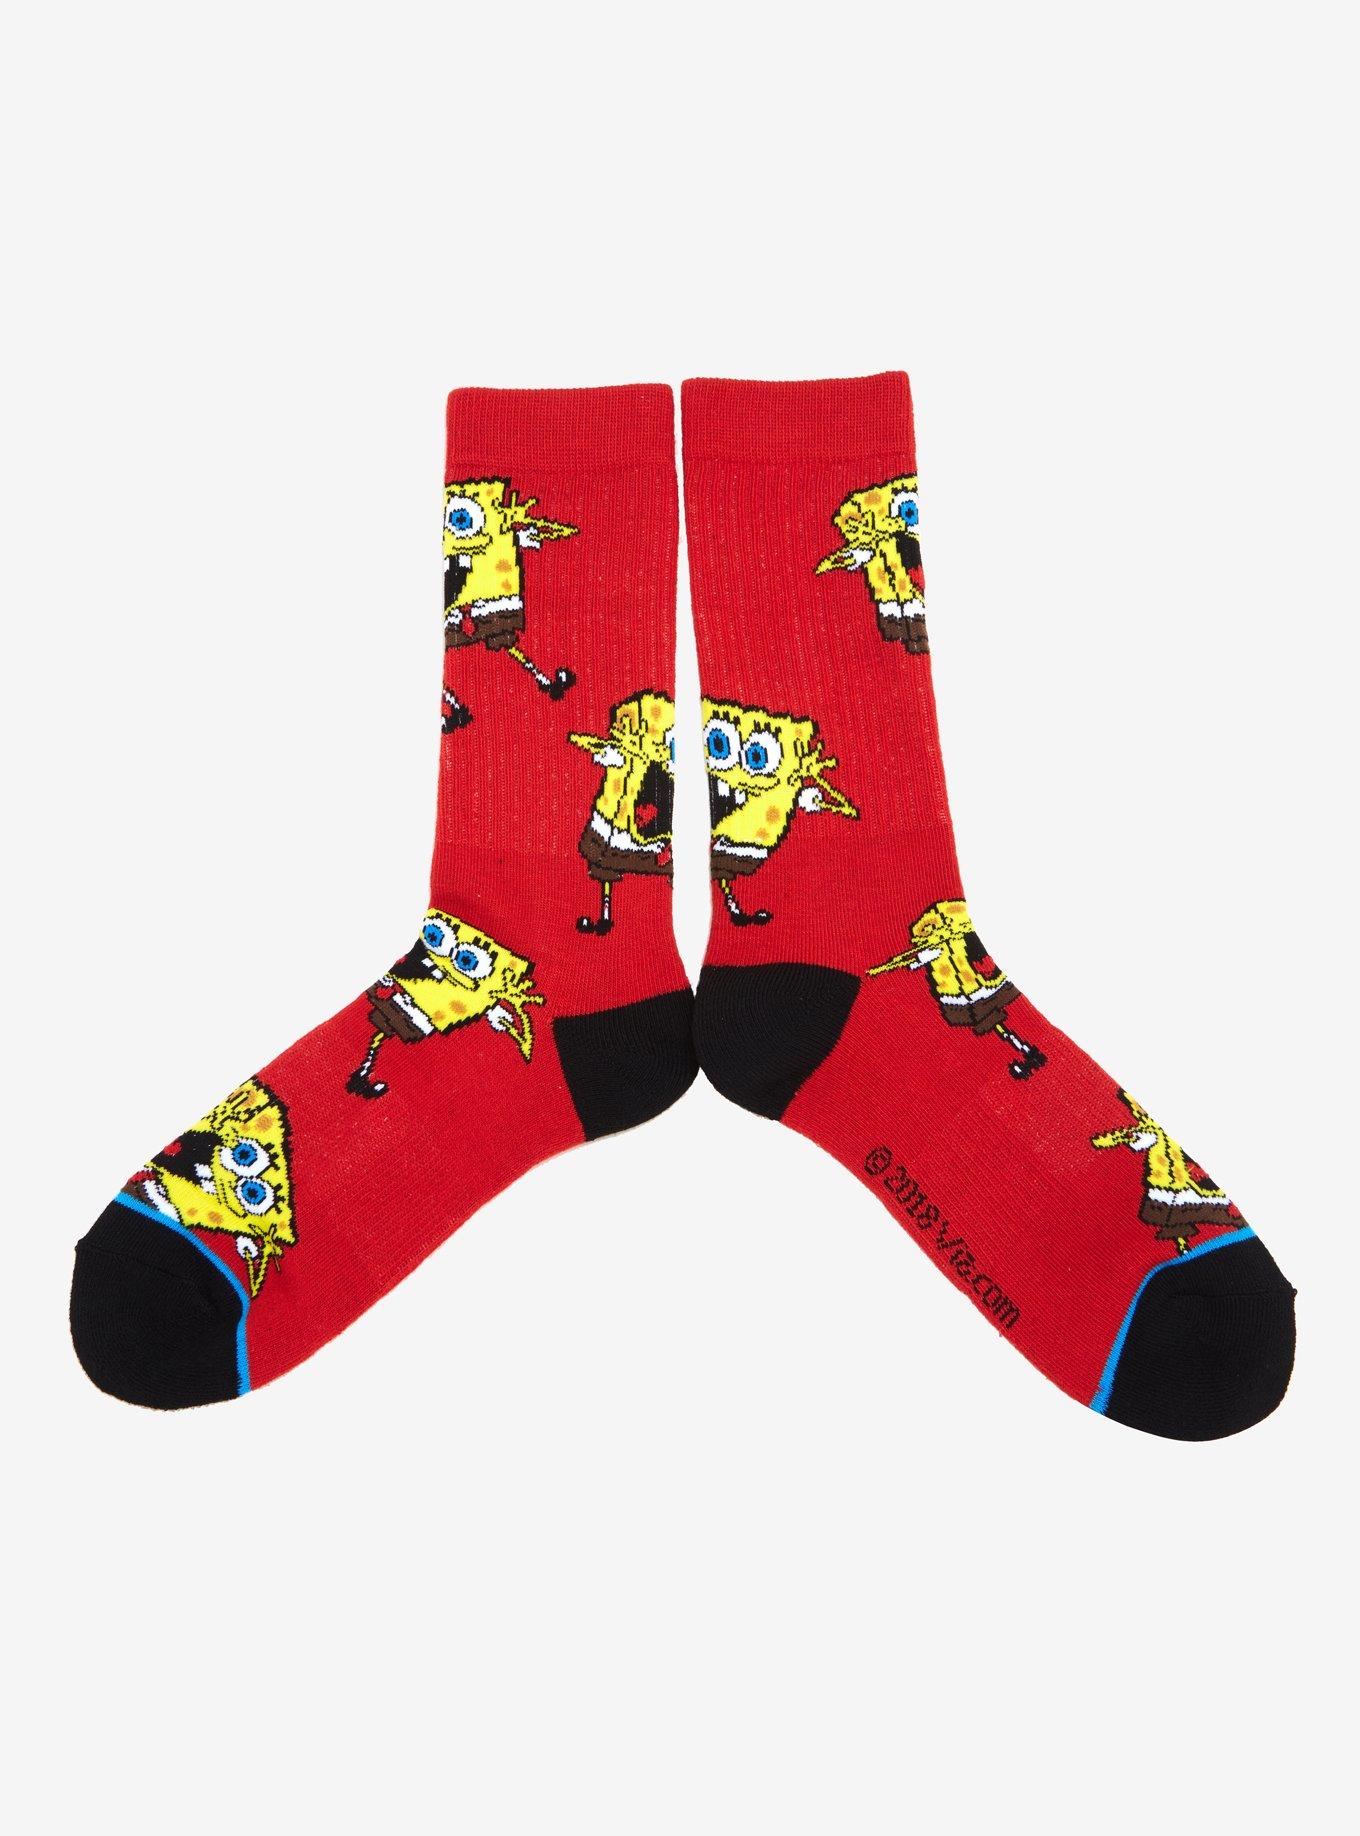 SpongeBob SquarePants Print Crew Socks, , hi-res